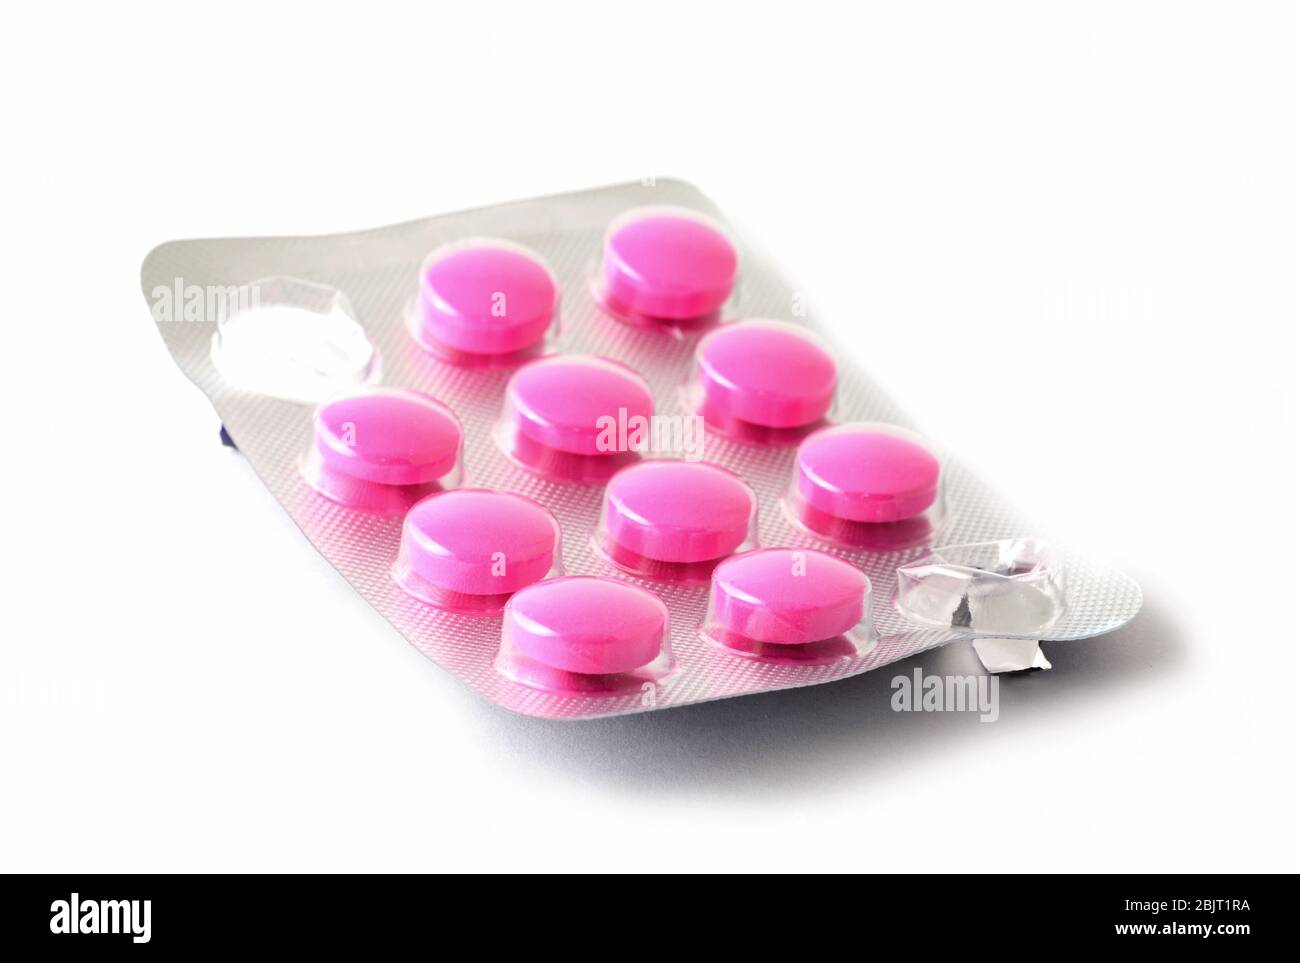 Macro-shot de l'emballage entier de blister avec des pilules roses et quelques comprimés manquants comprimés pressés sur fond blanc. Banque D'Images